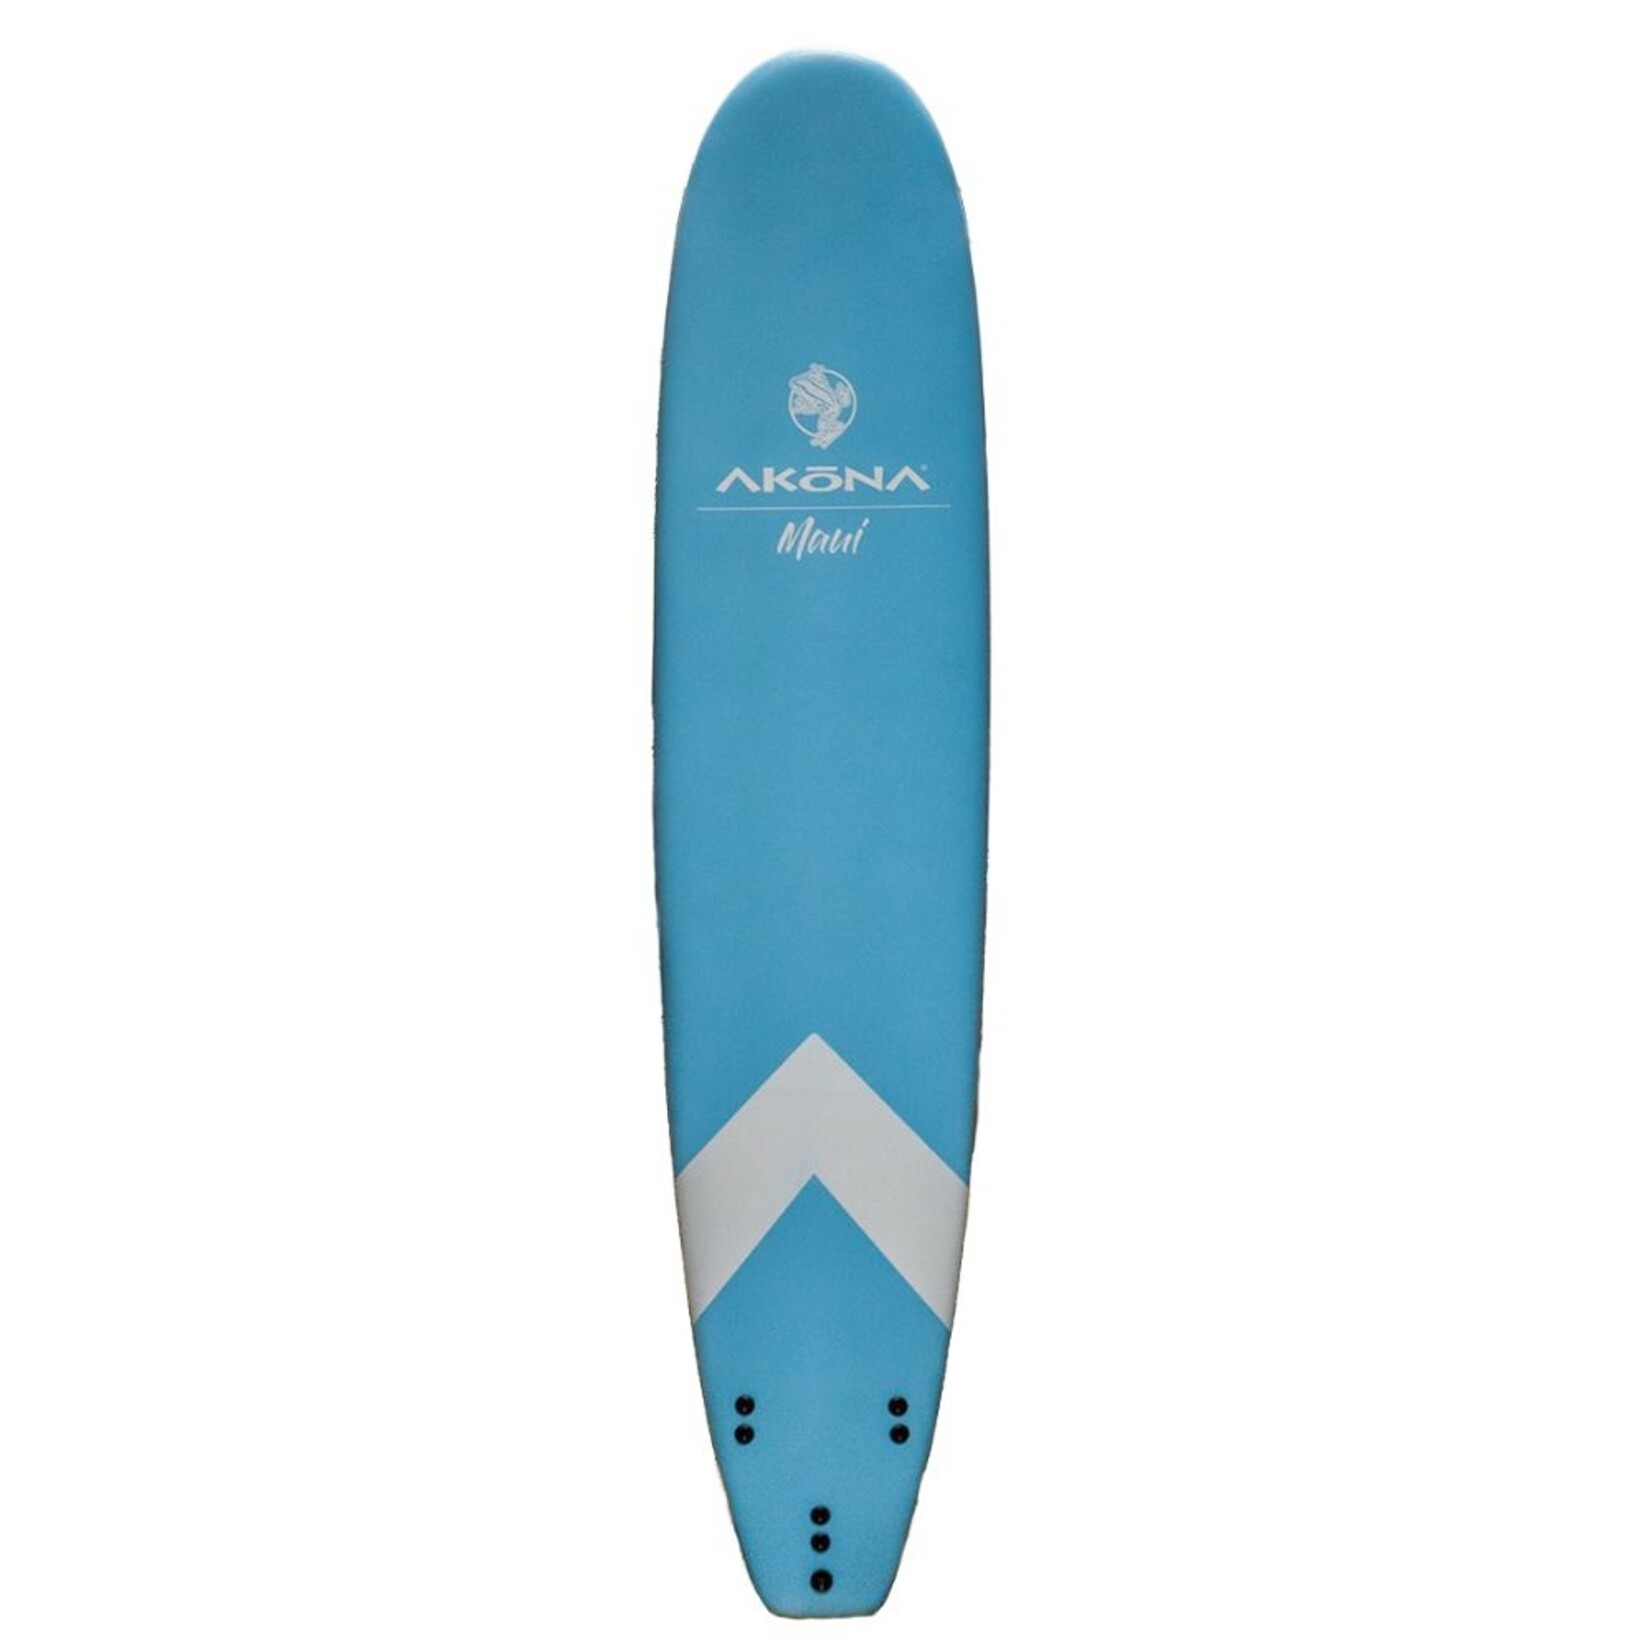 Akona Maui '22 softtop surfboard